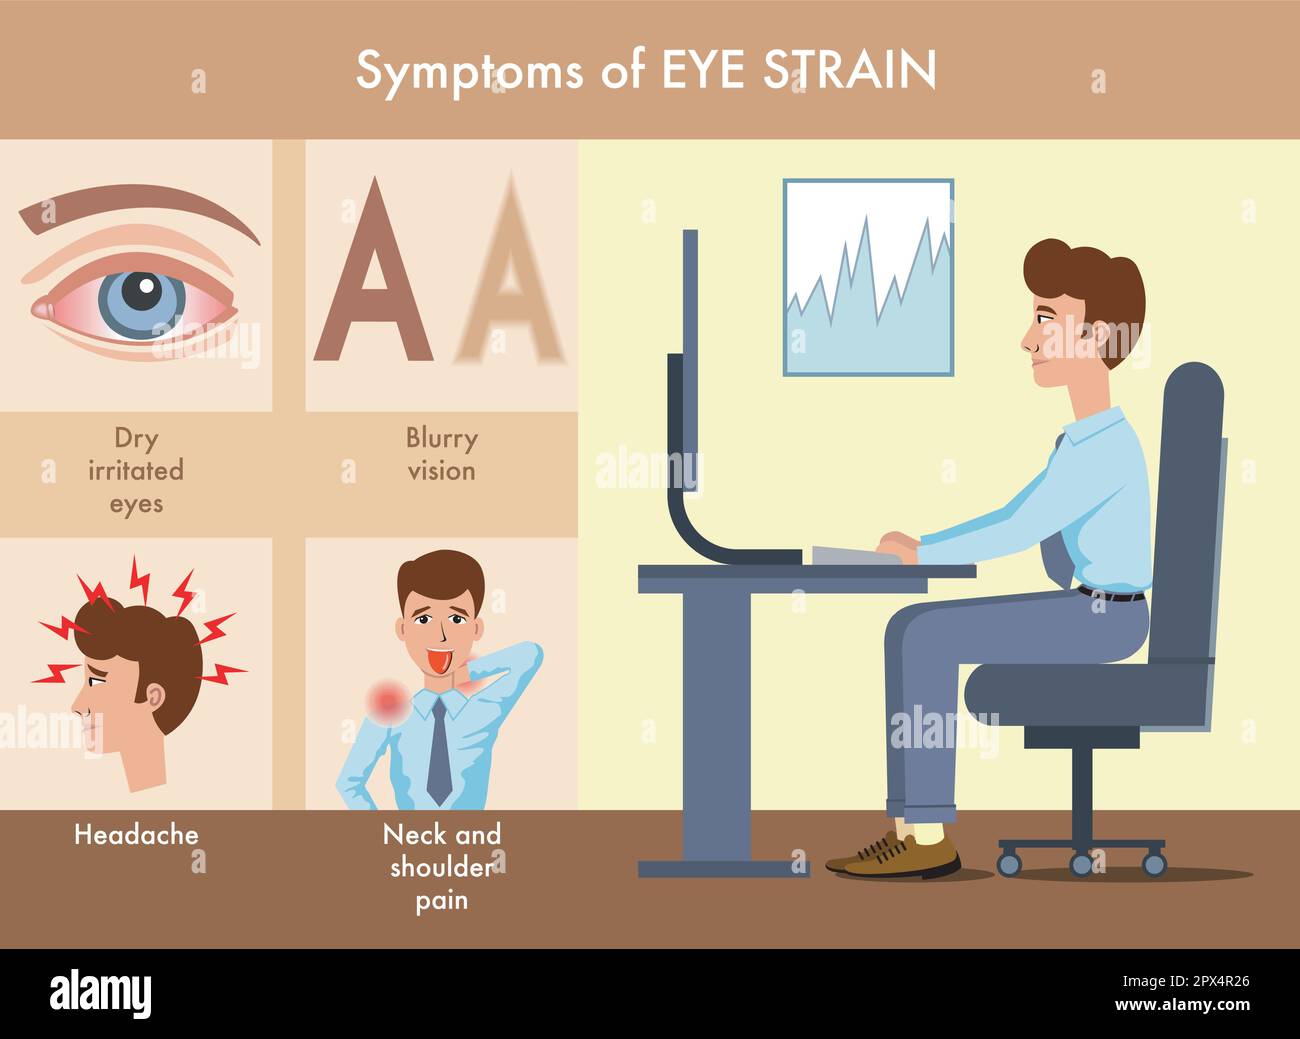 Semplice illustrazione dei sintomi dello sforzo oculare, con annotazioni. Illustrazione Vettoriale